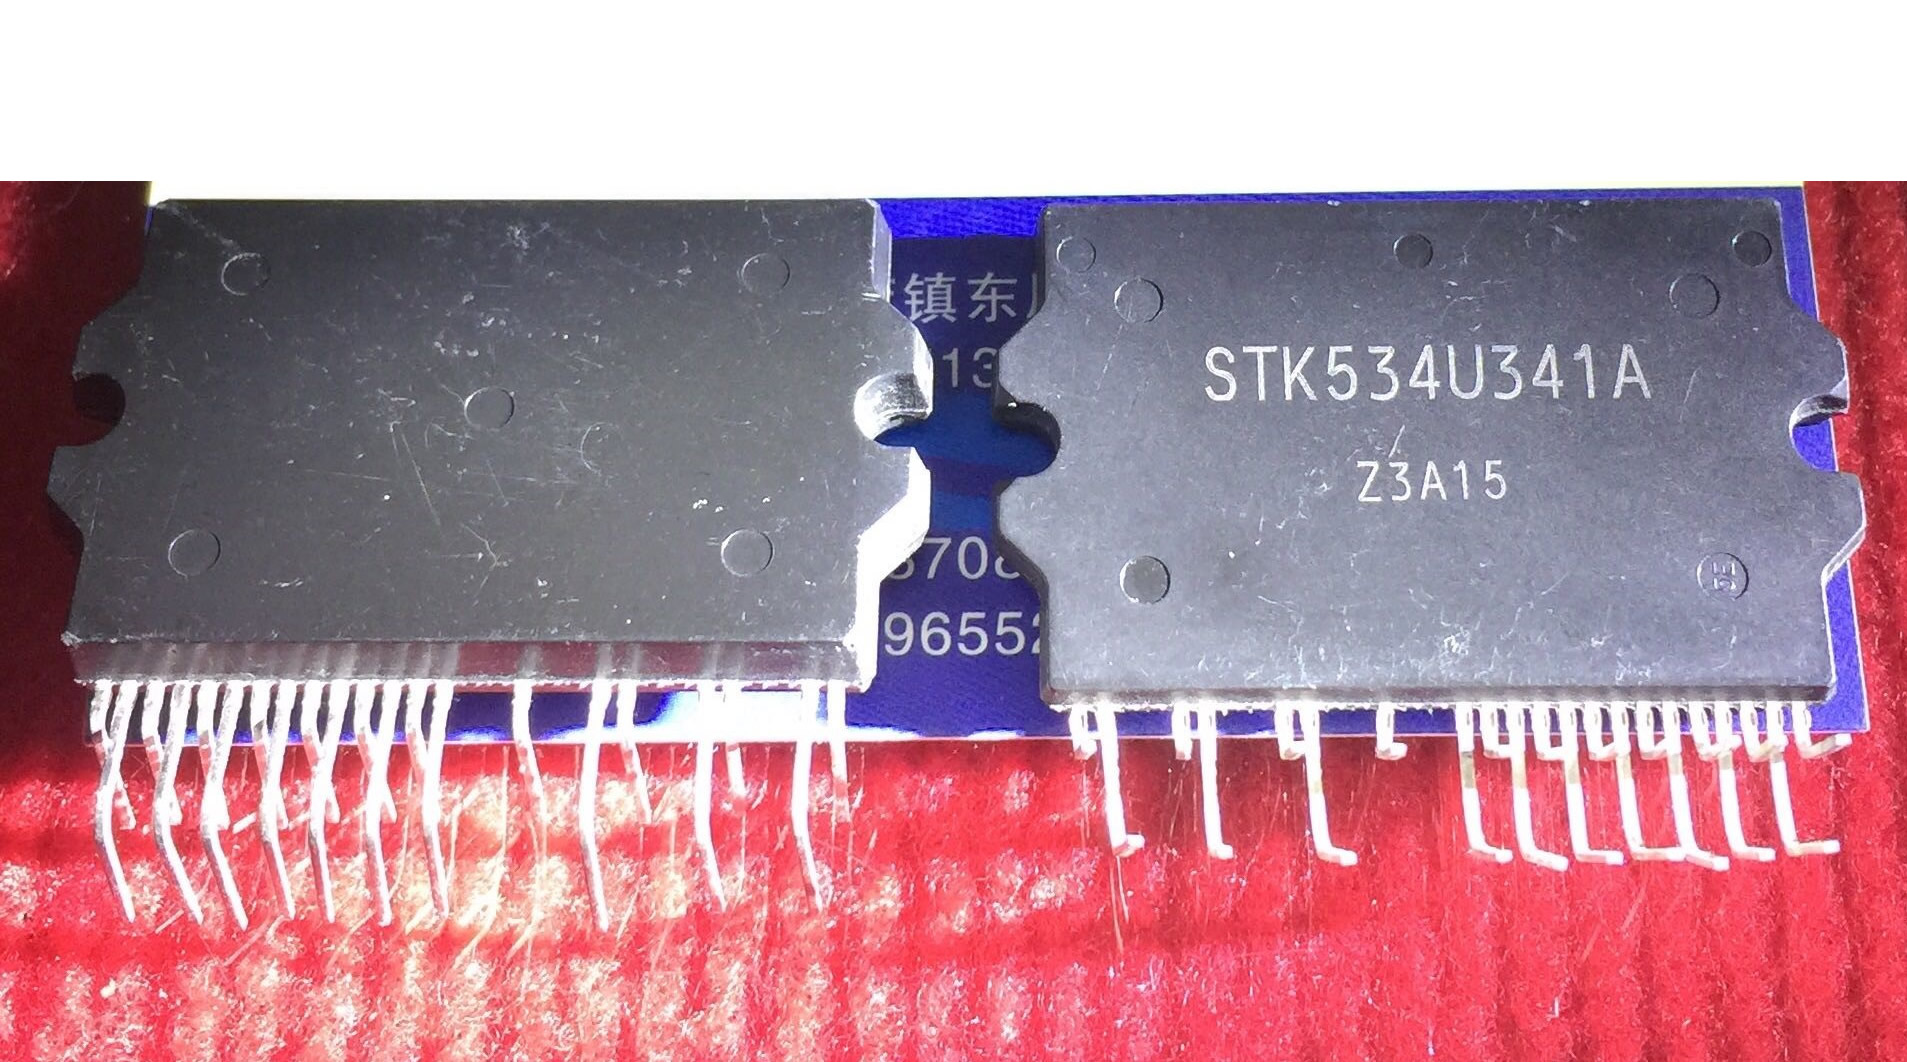 STK534U341A New Original 21 5PCS/LOT